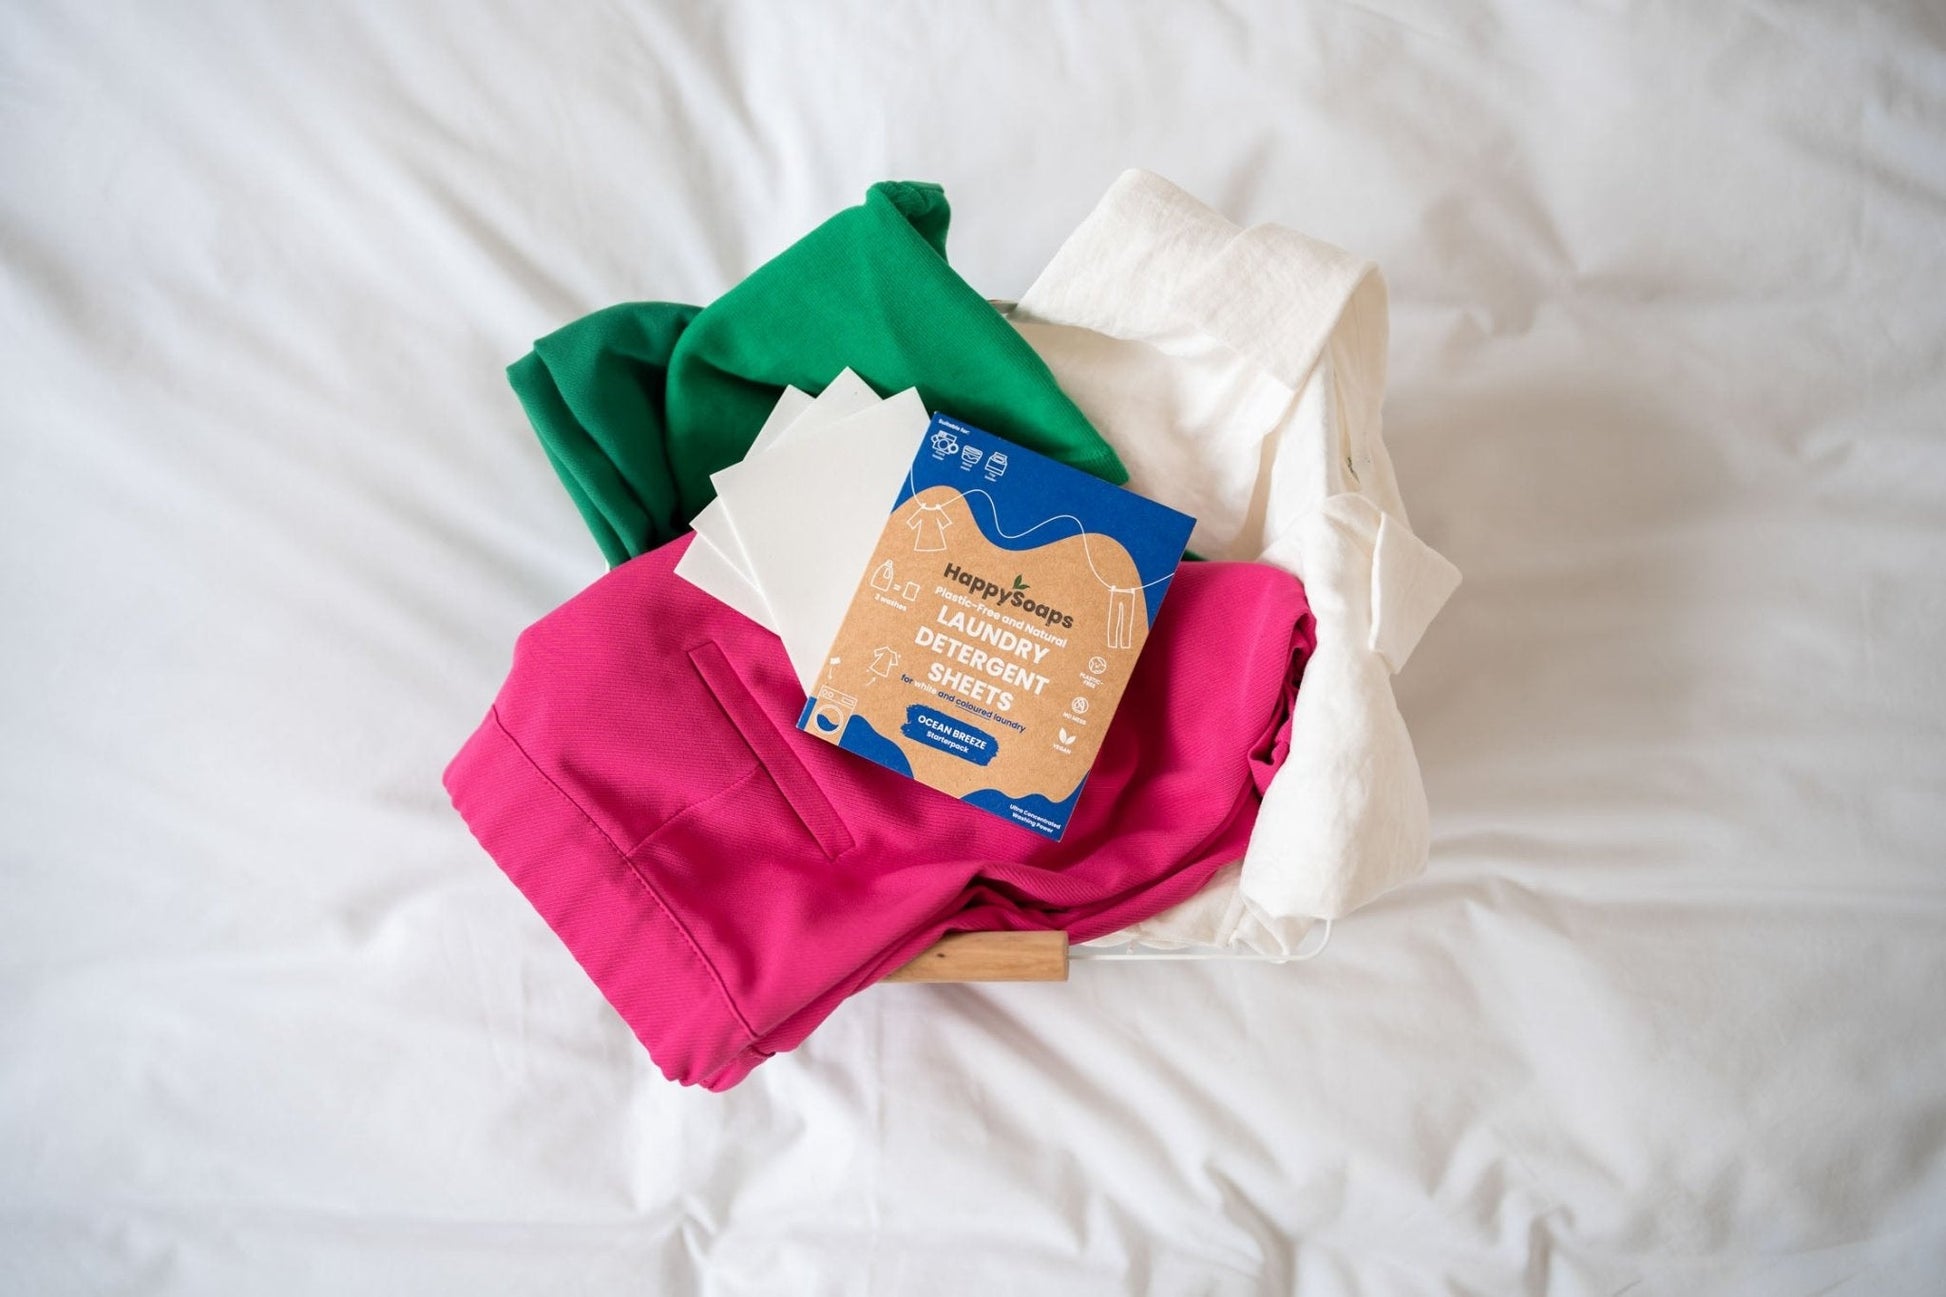 Laundry Sheets - Gekleurde en Witte Was - Testpakket 3 stuks - HappySoaps NL